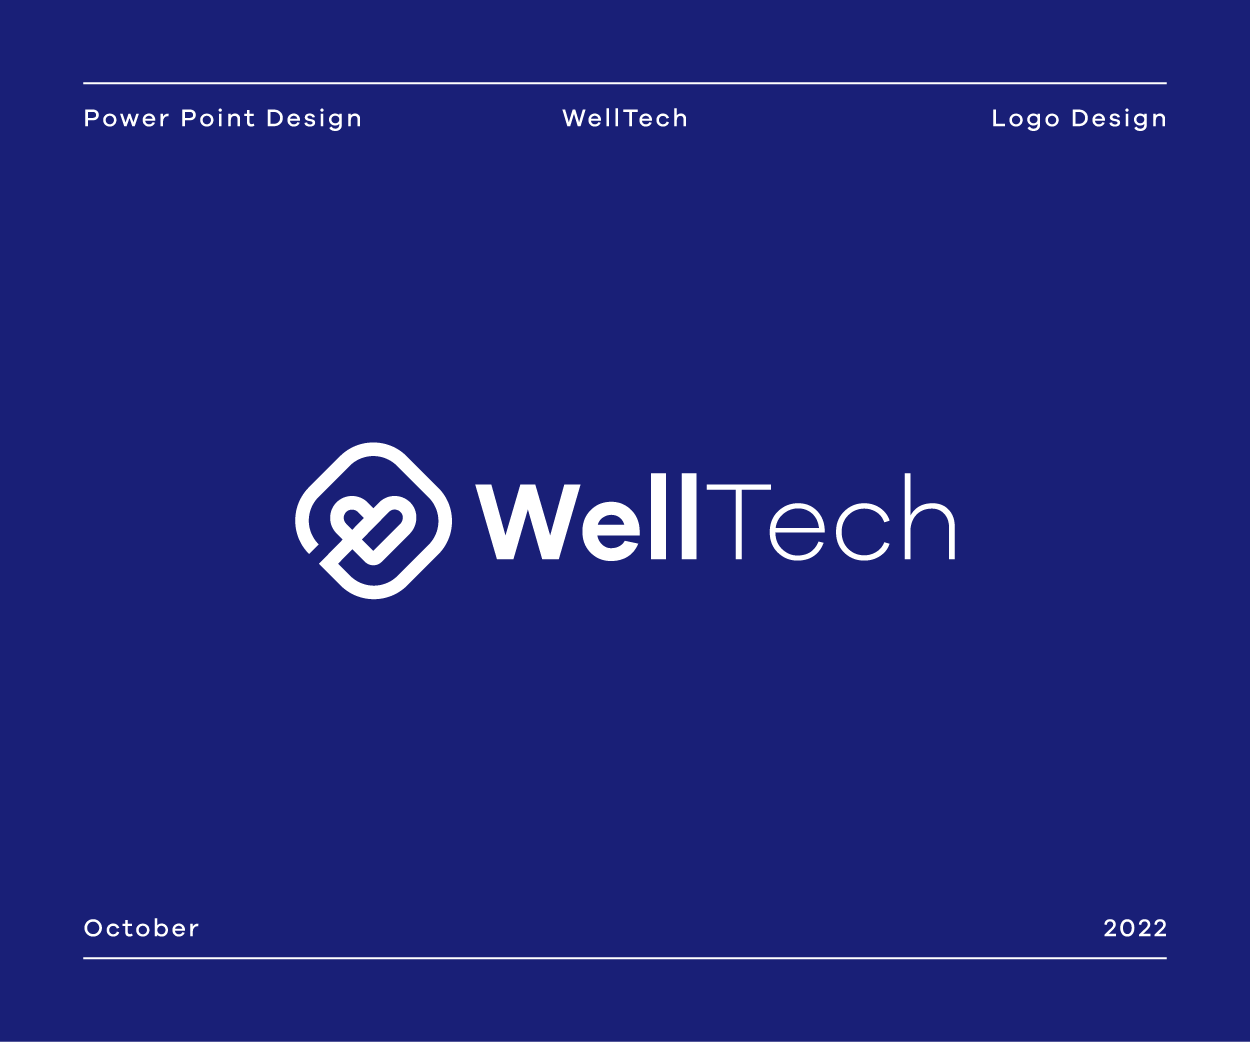 WellTech is wellness-related digital content.